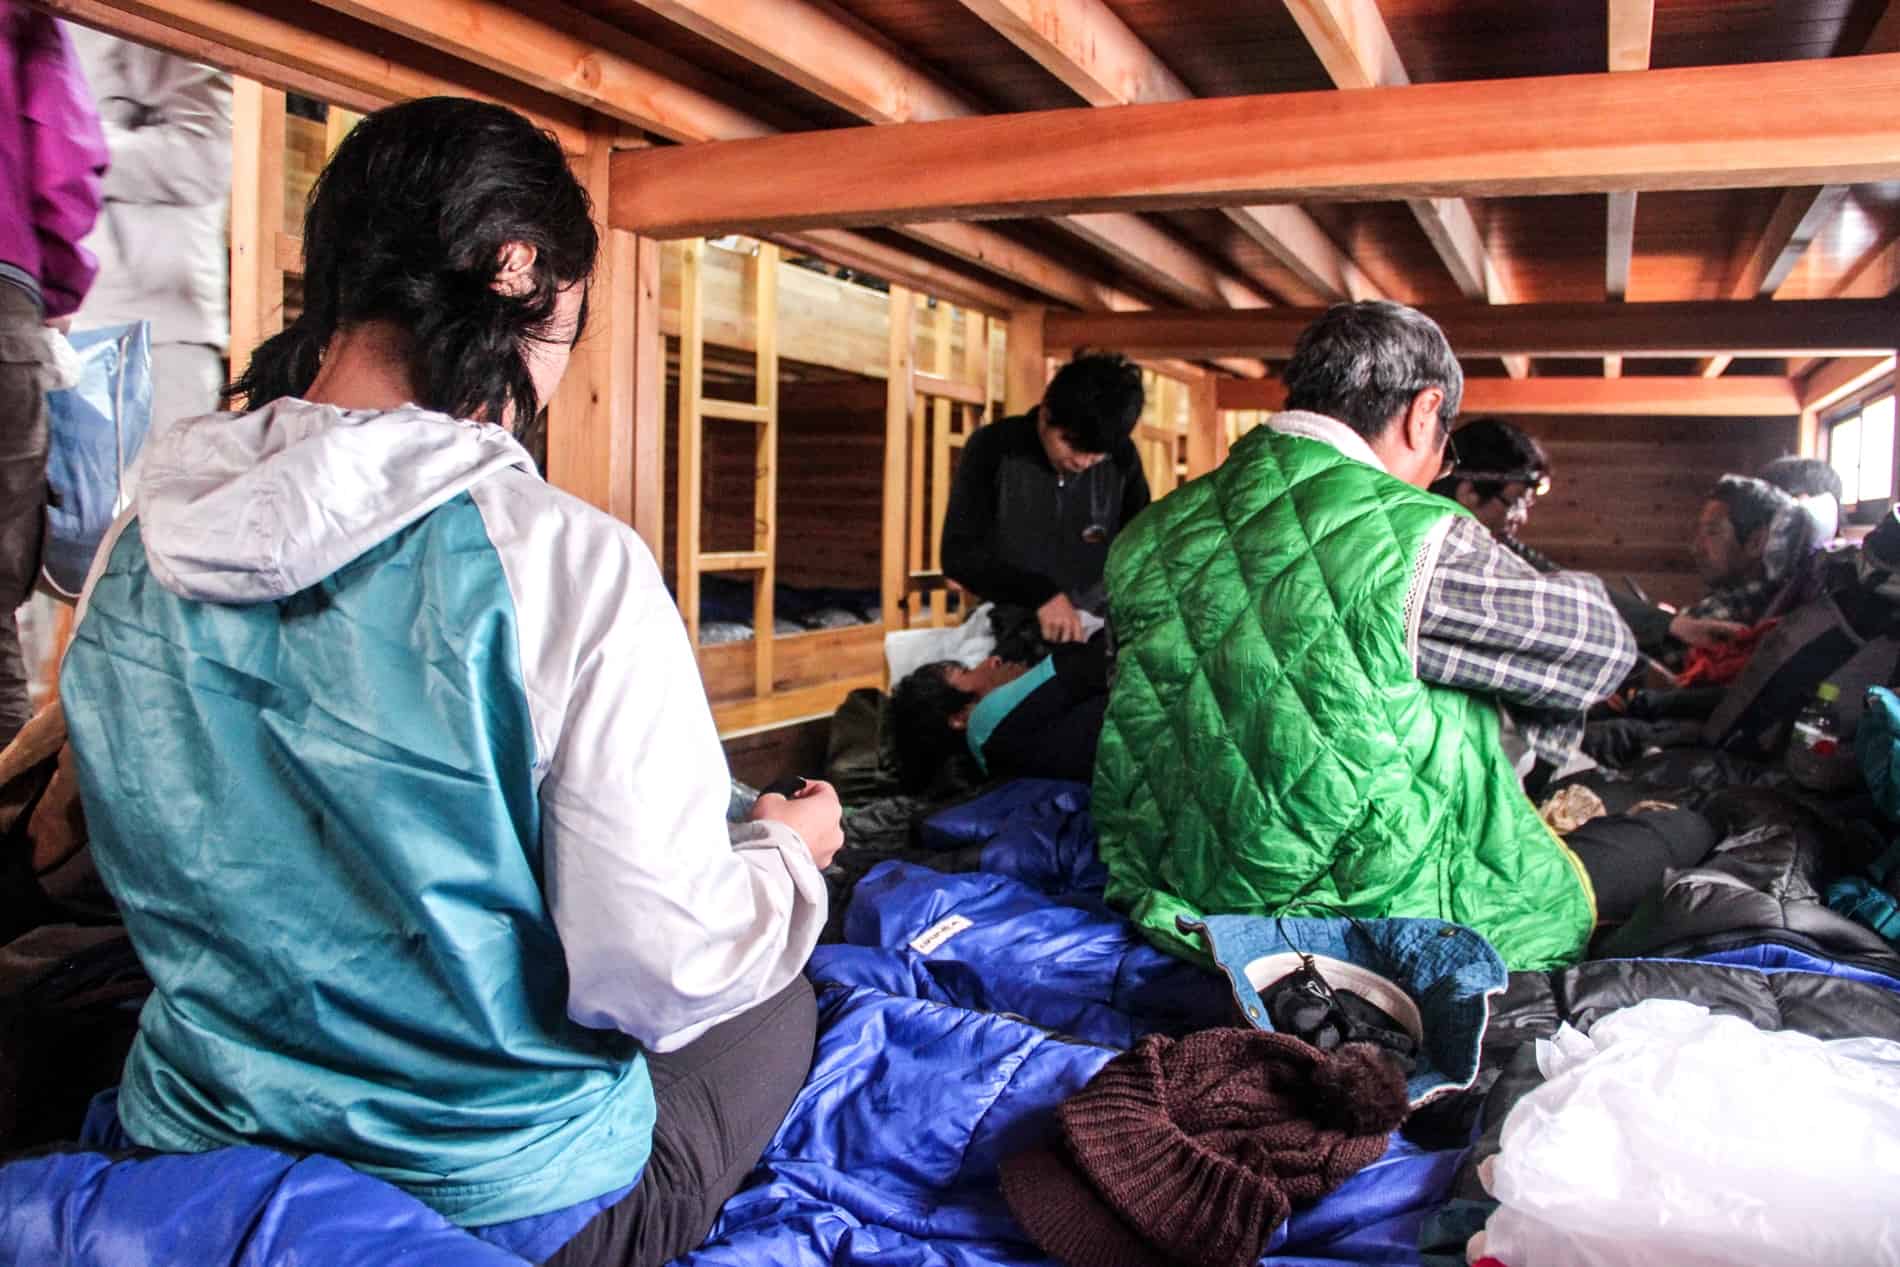 Japanese hikers on blue sleeping bags in a communal mountain hut on Mt. Fuji preparing their belongings. 